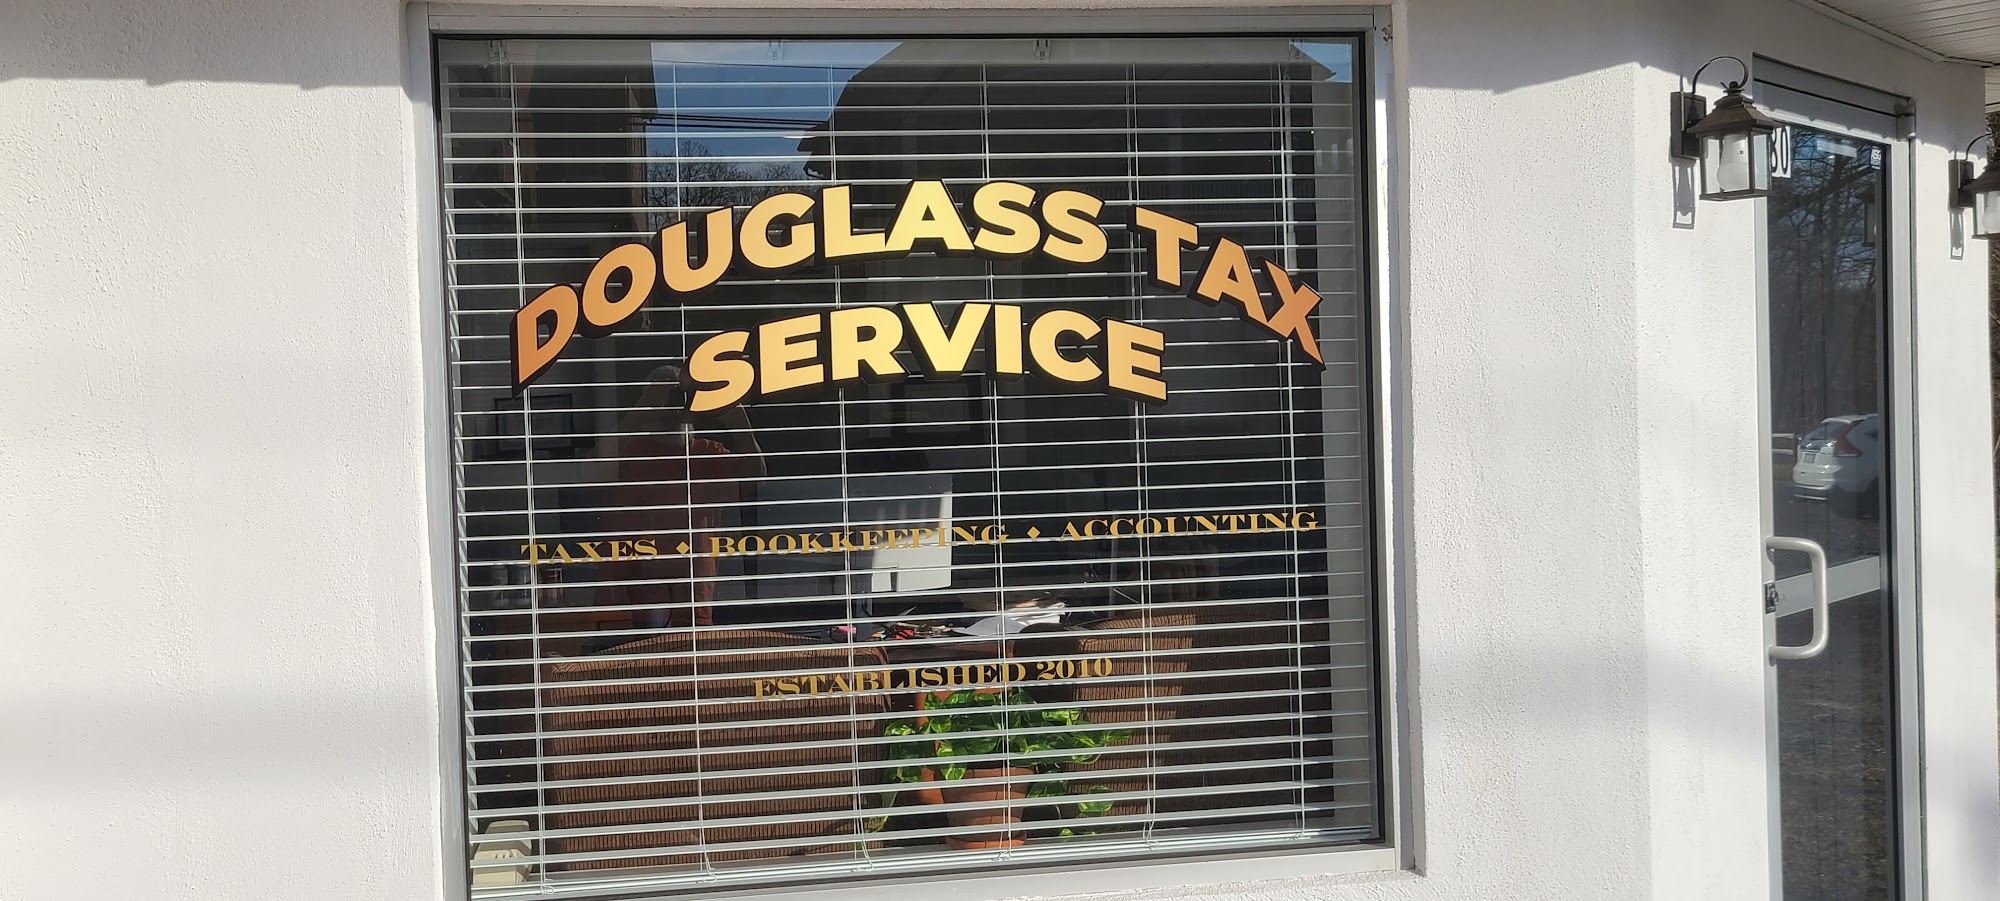 Walter Douglass Tax Service